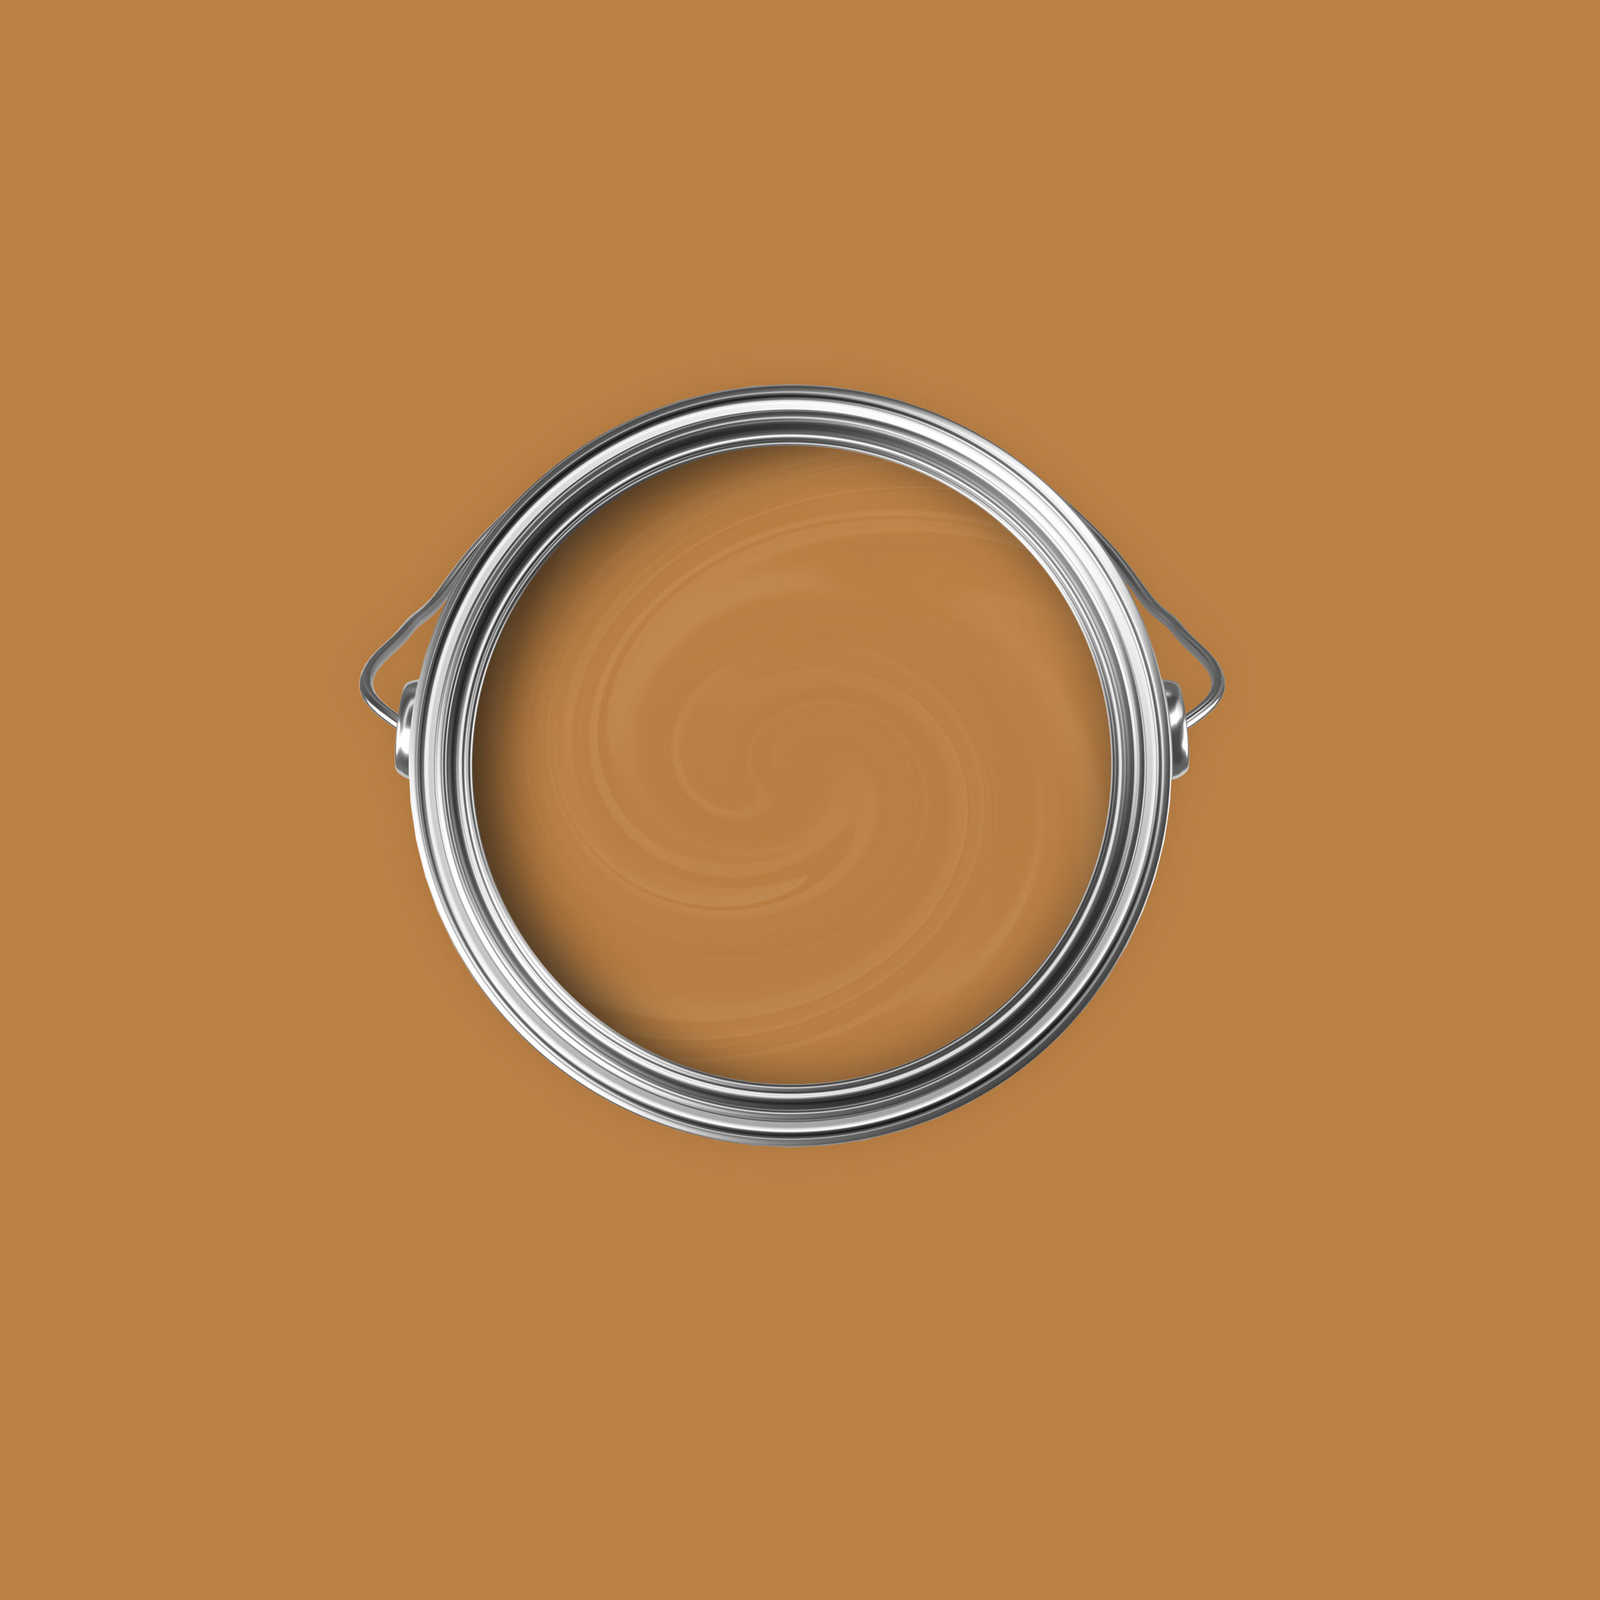             Premium Muurverf sterk lichtbruin »Beige Orange/Sassy Saffron« NW814 – 2,5 Liter
        